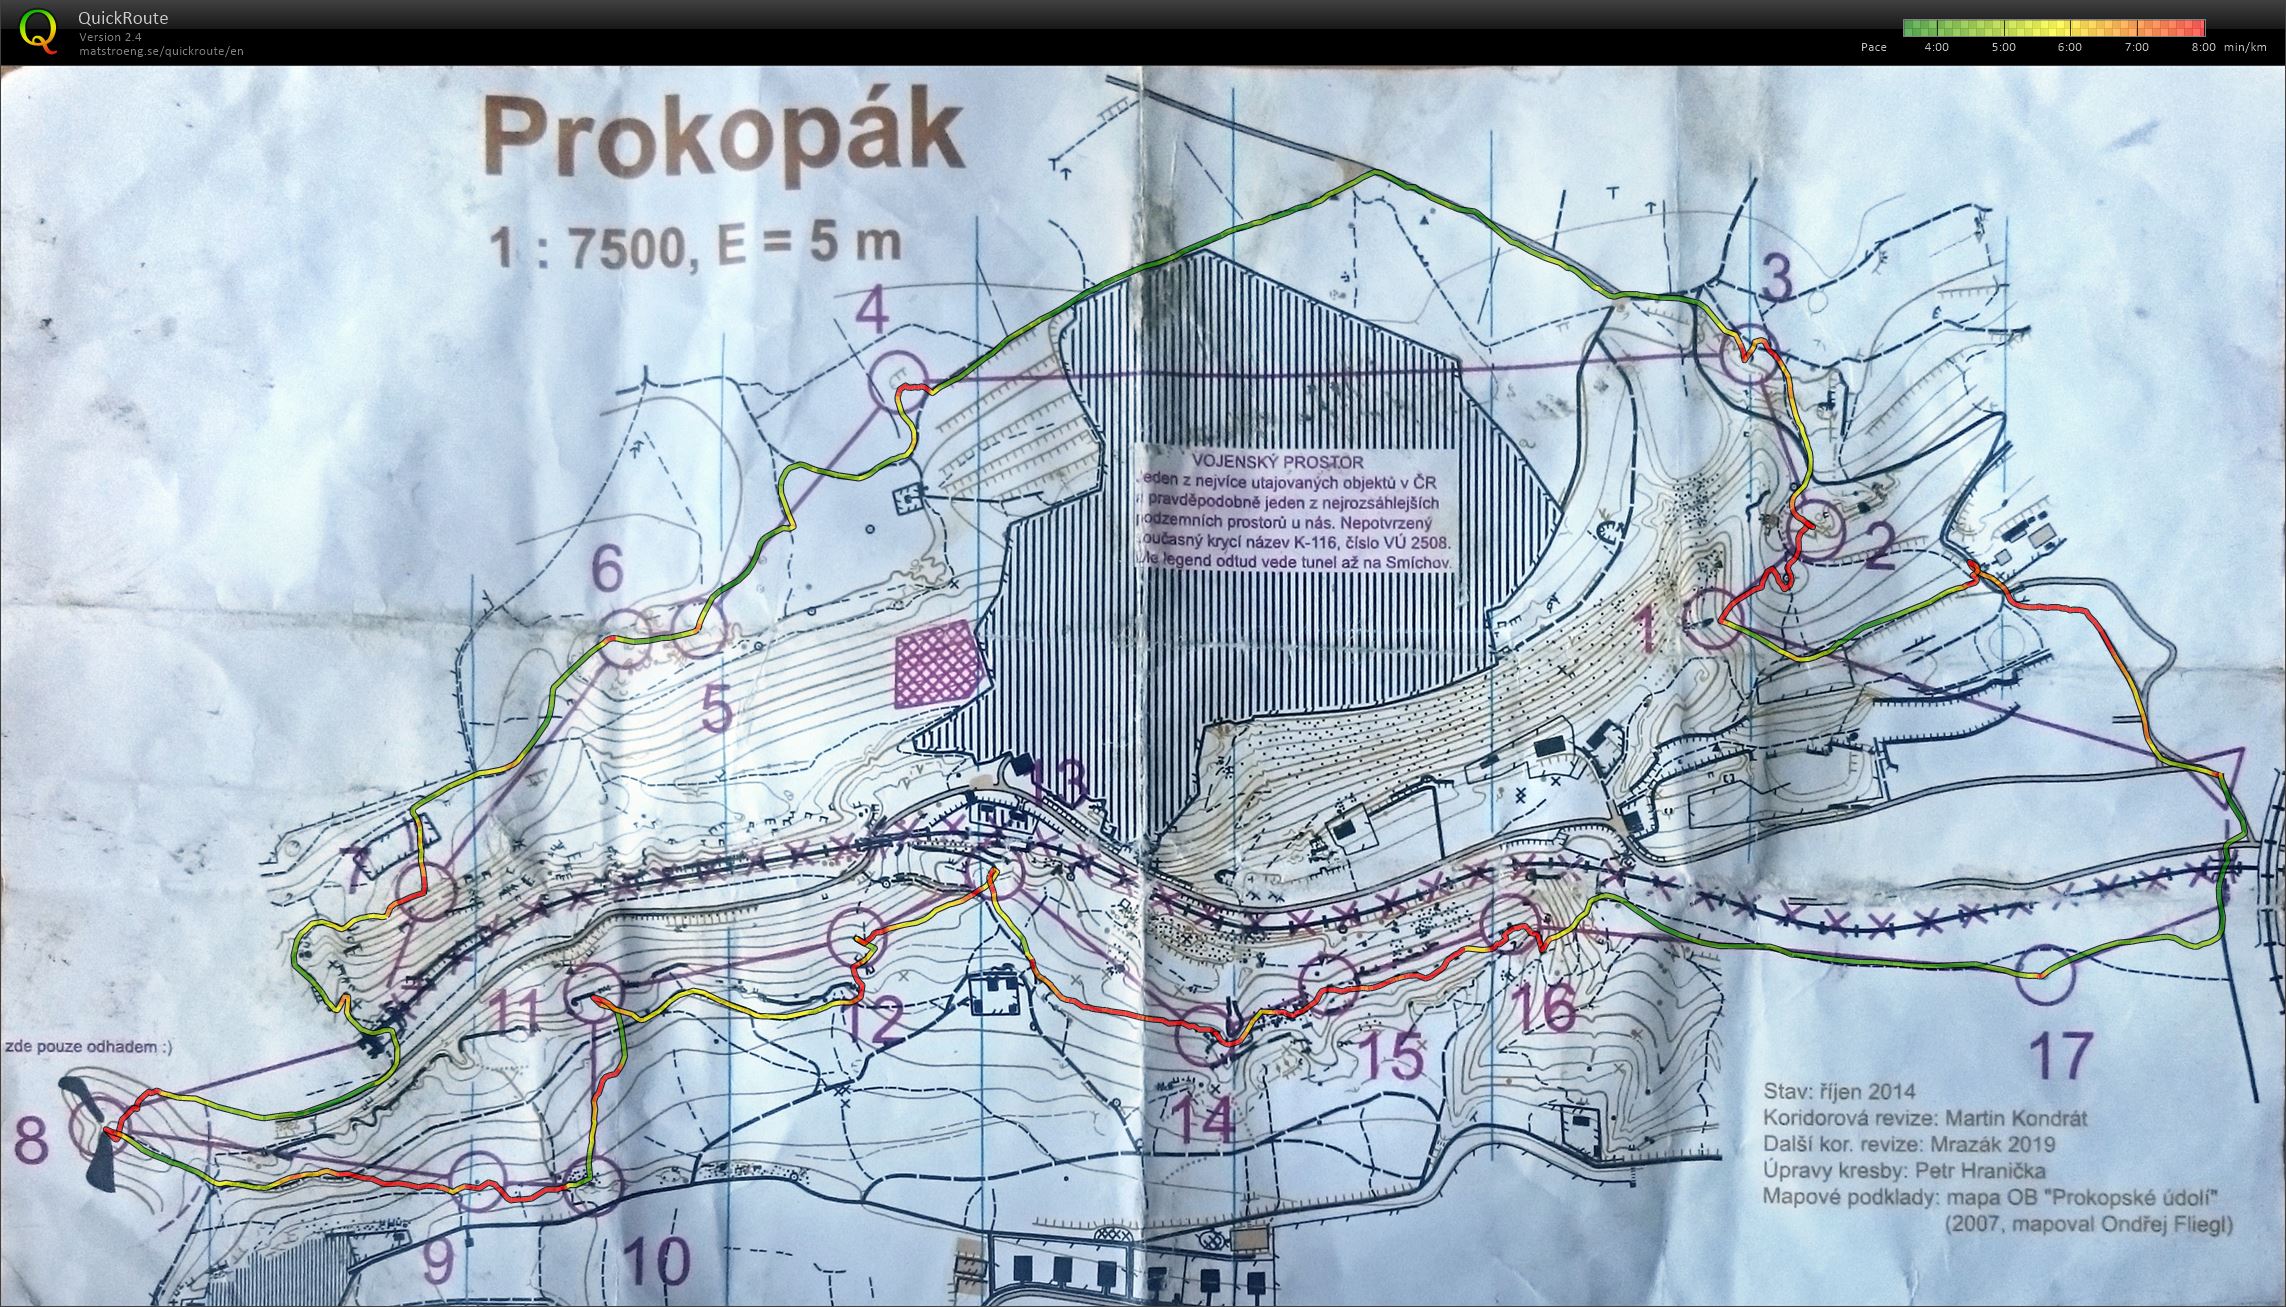 O-liga #6 - Prokopak (30-07-2019)